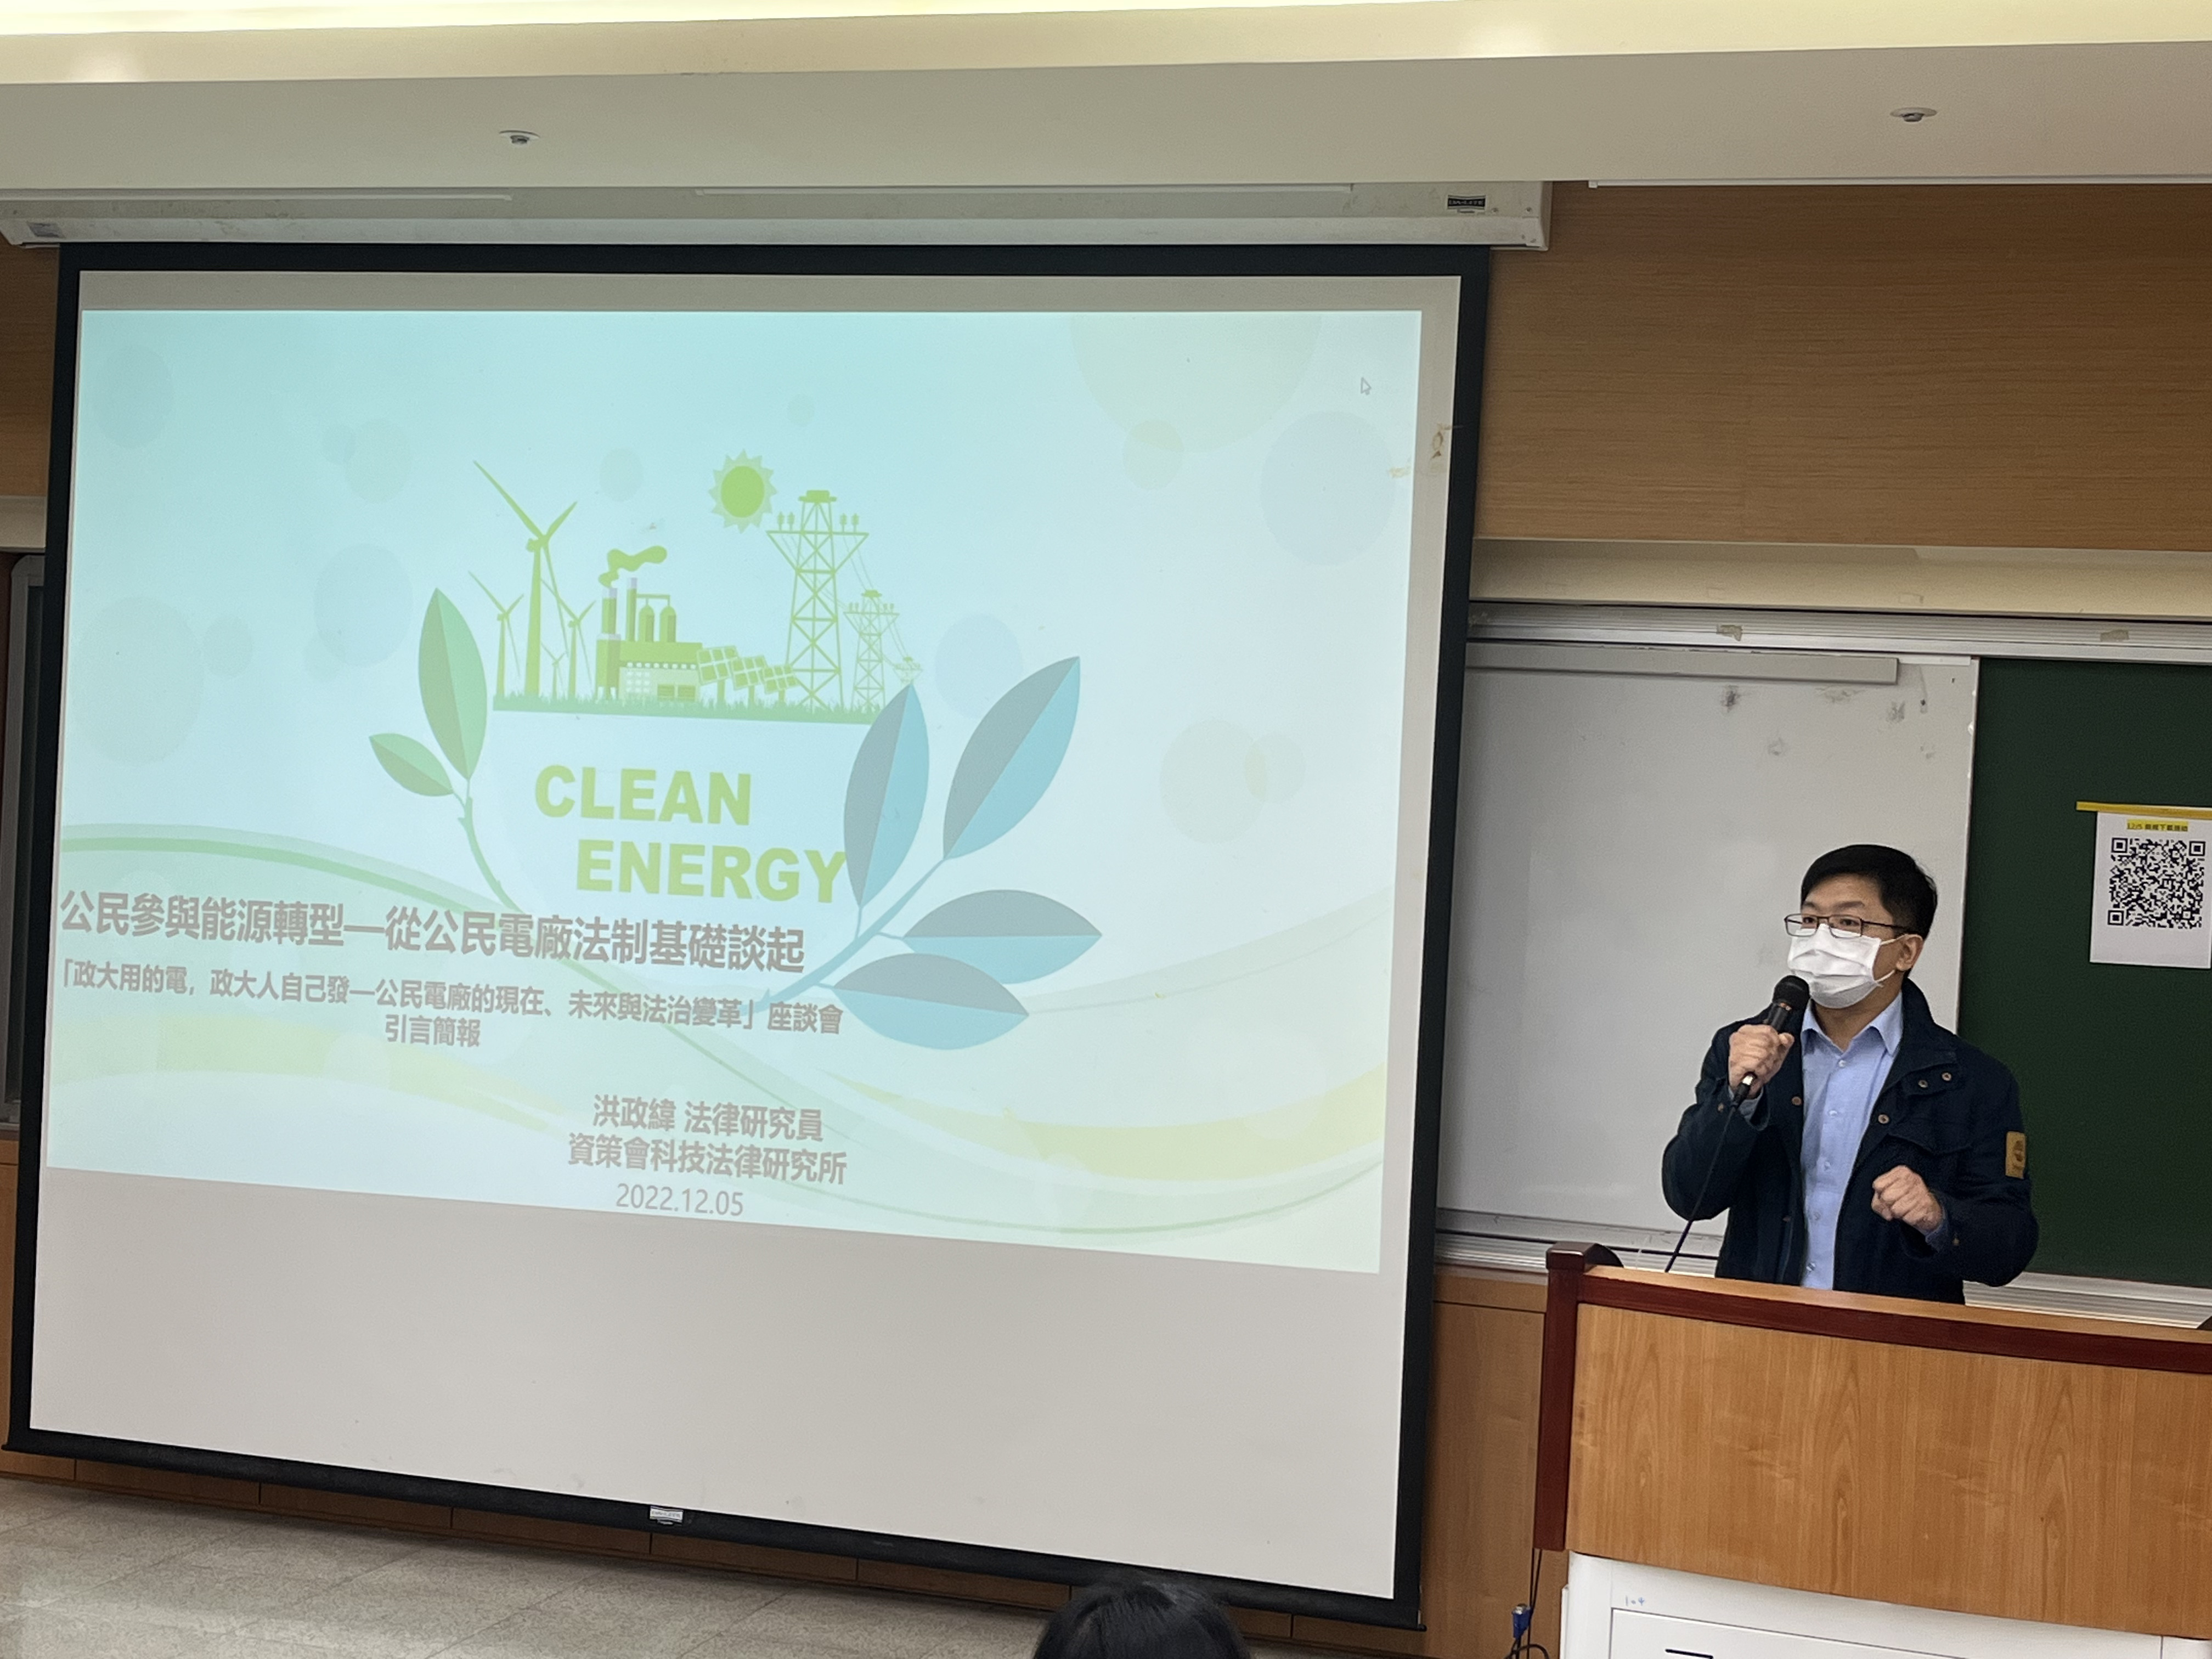 資策會科技法律研究所洪政緯研究員演講「公民參與能源轉型—從公民電廠法制基礎談起」。